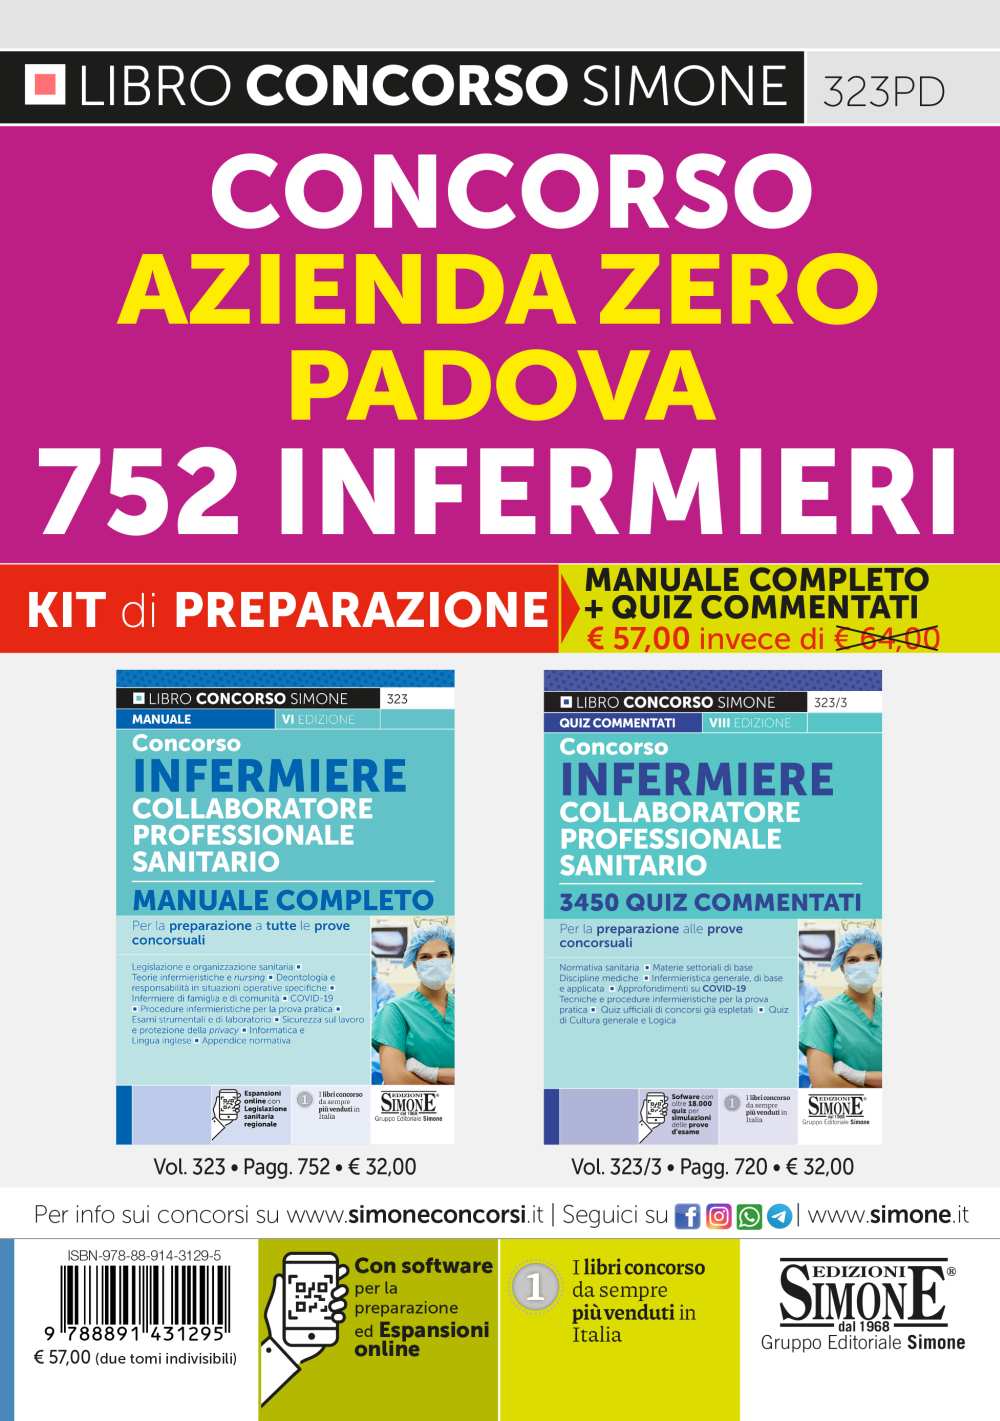 Concorso Azienda Zero - Padova - 752 Infermieri - Kit di preparazione - (323 + 323/3)